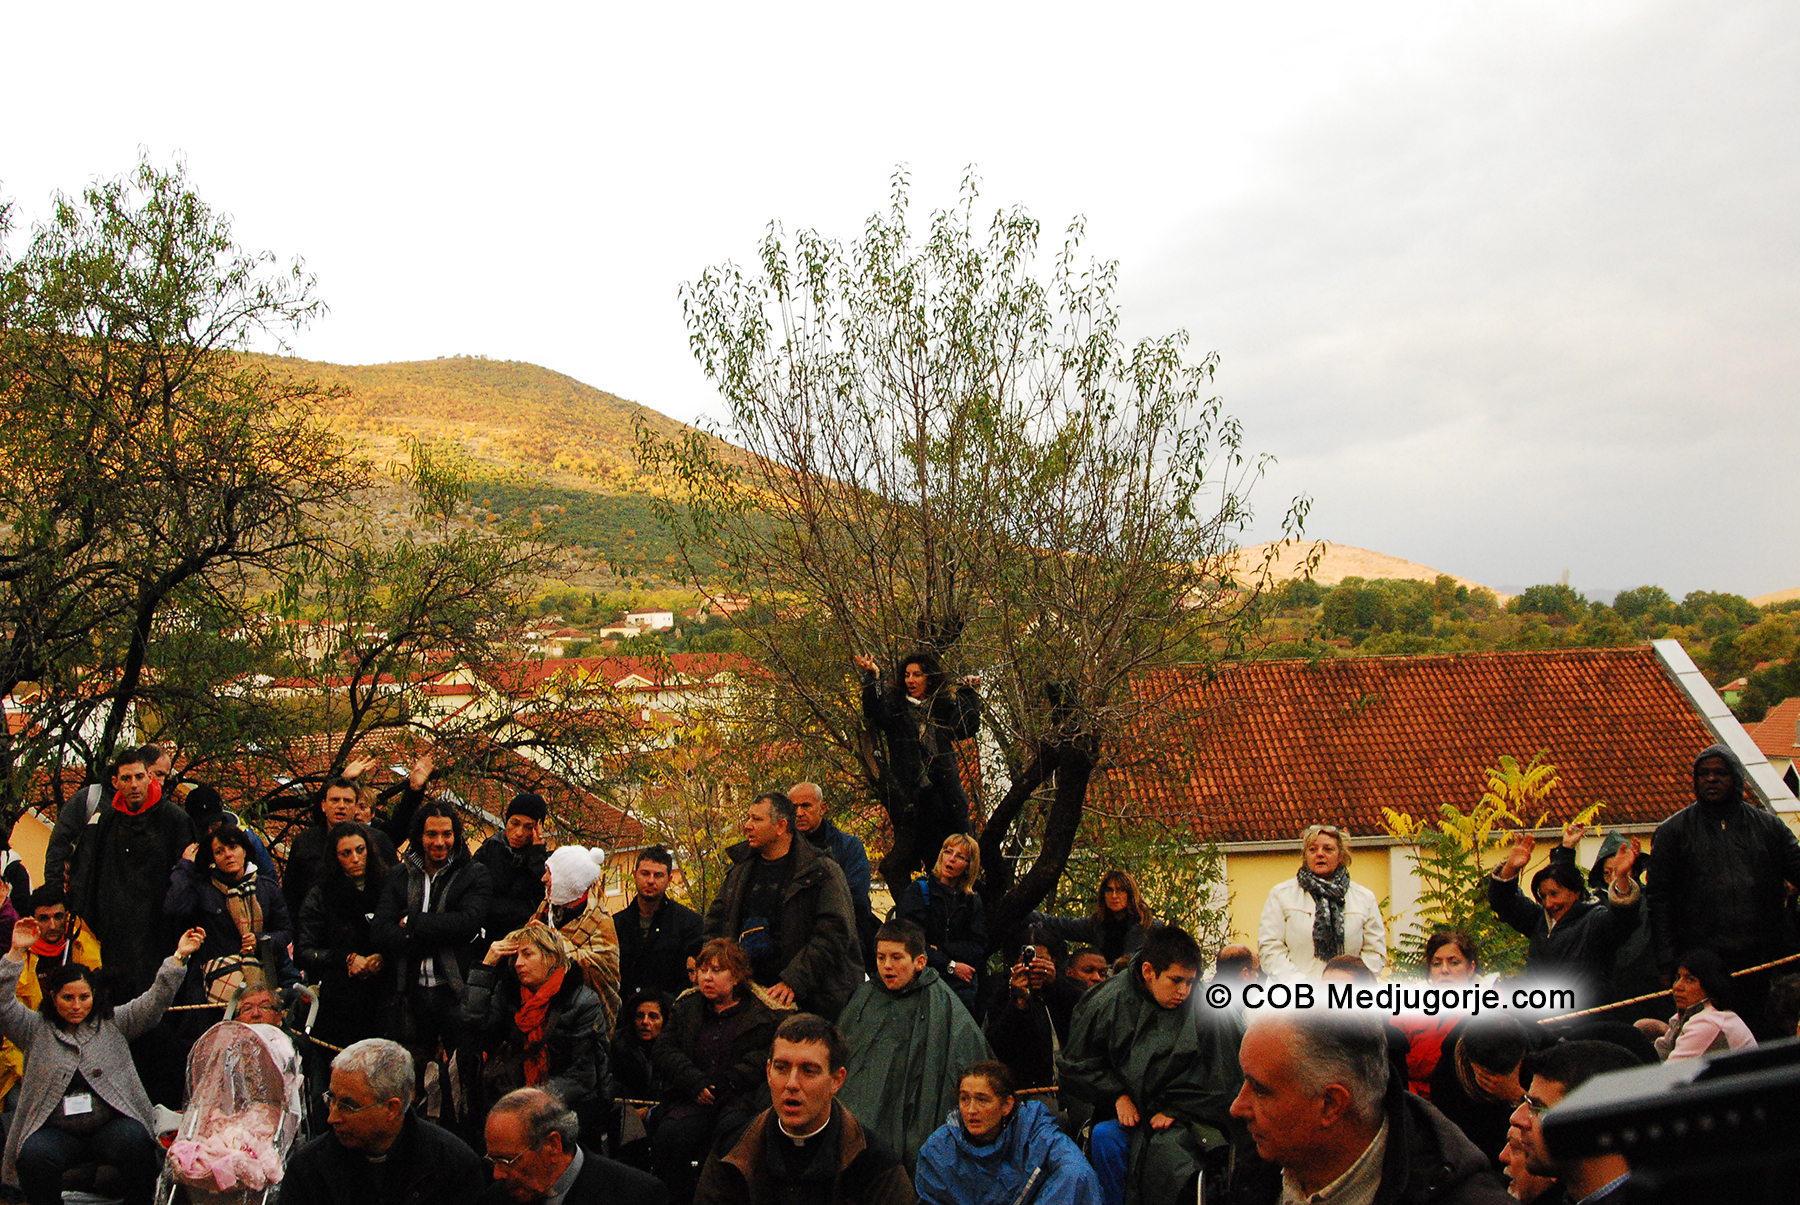 Crowd gathering at Mirjana's apparition November 2, 2010